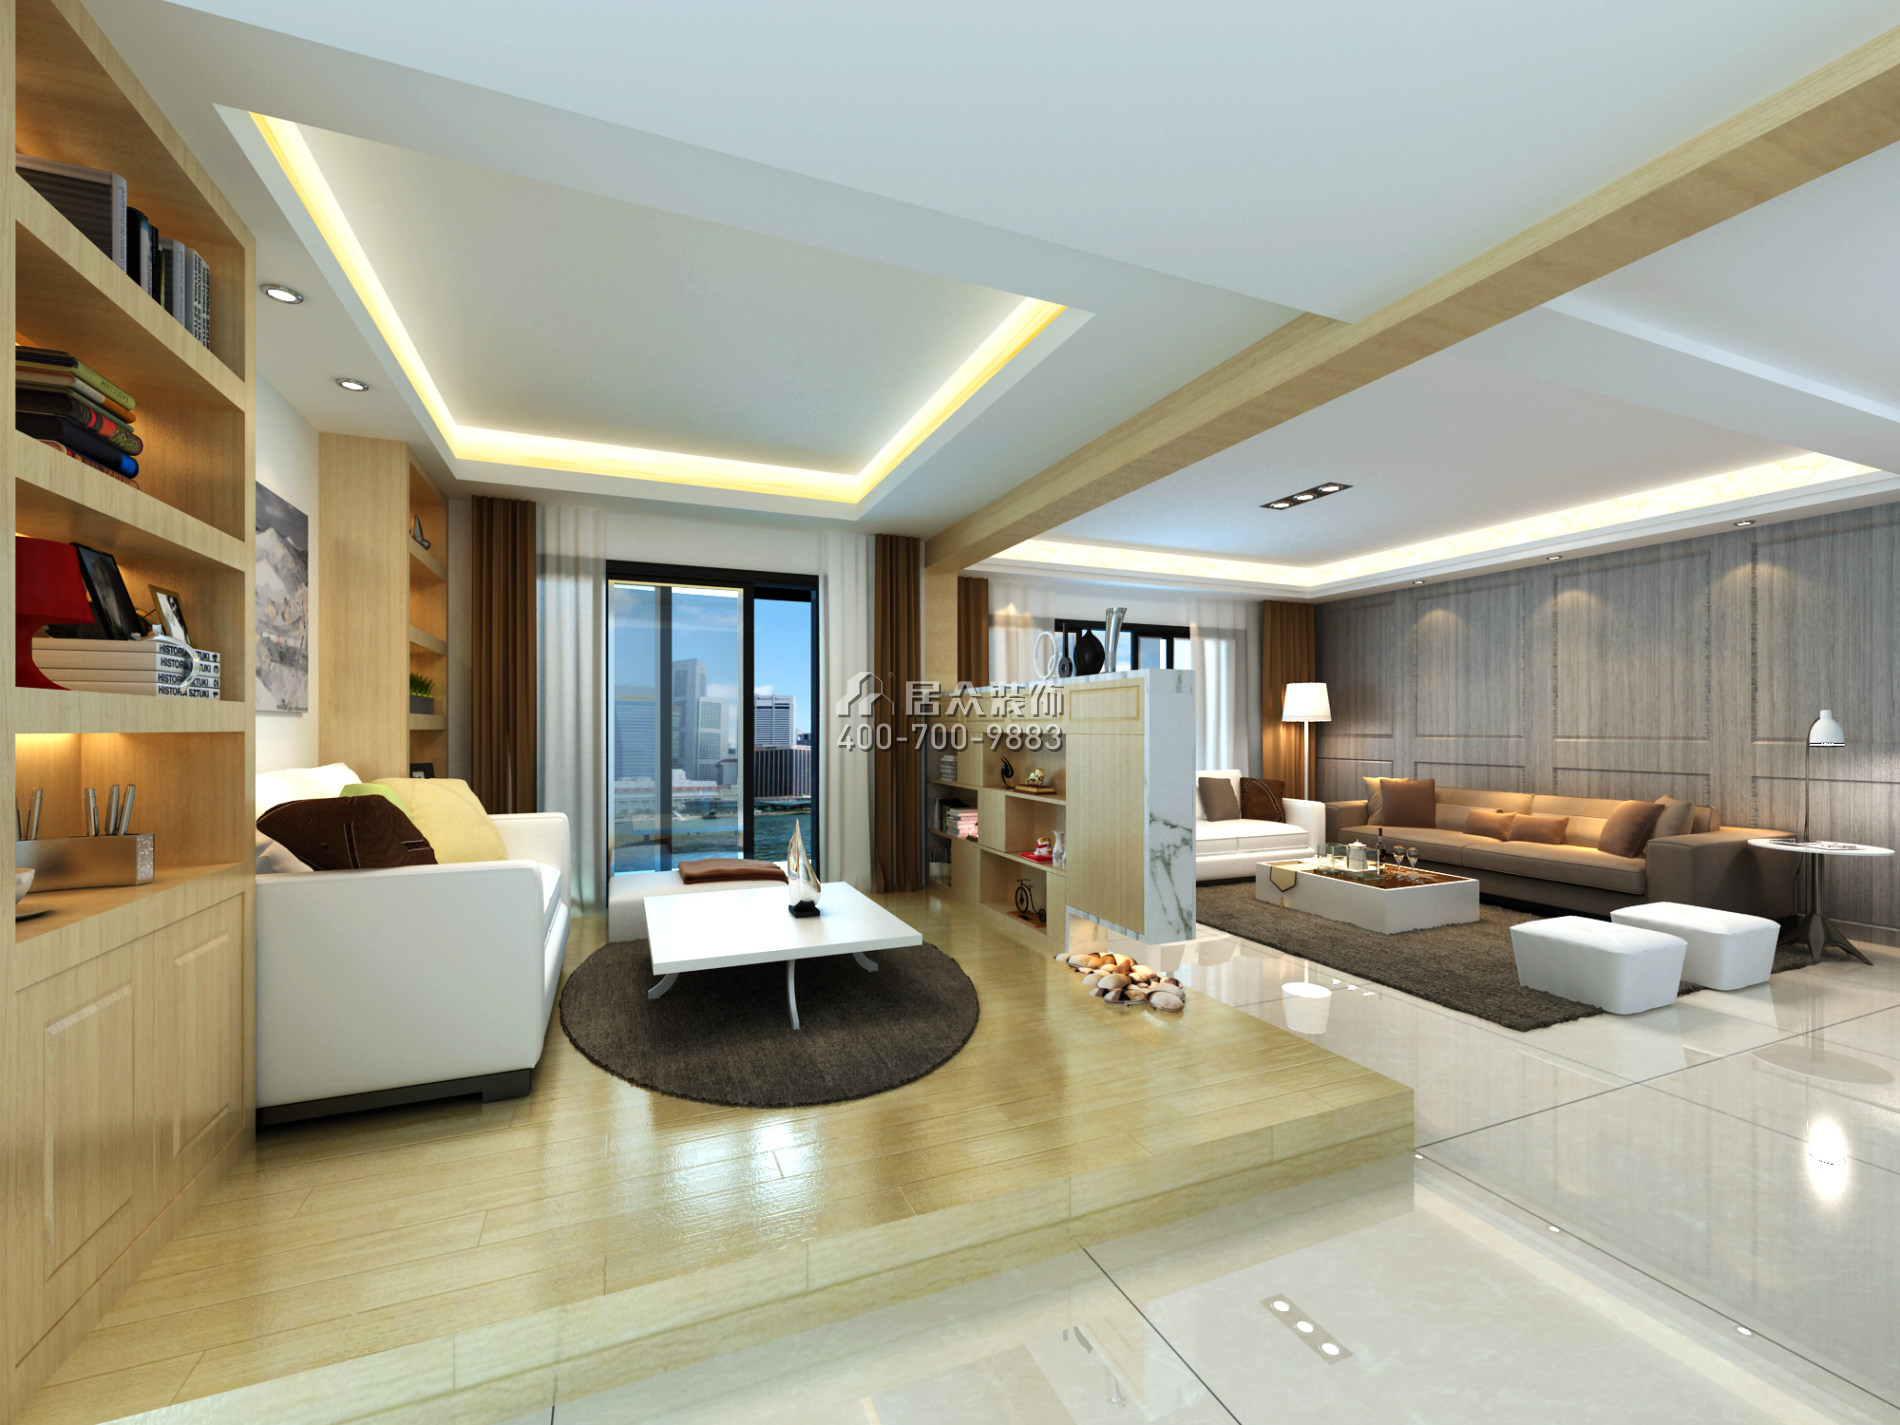 天湖酈都180平方米現代簡約風格平層戶型客廳裝修效果圖